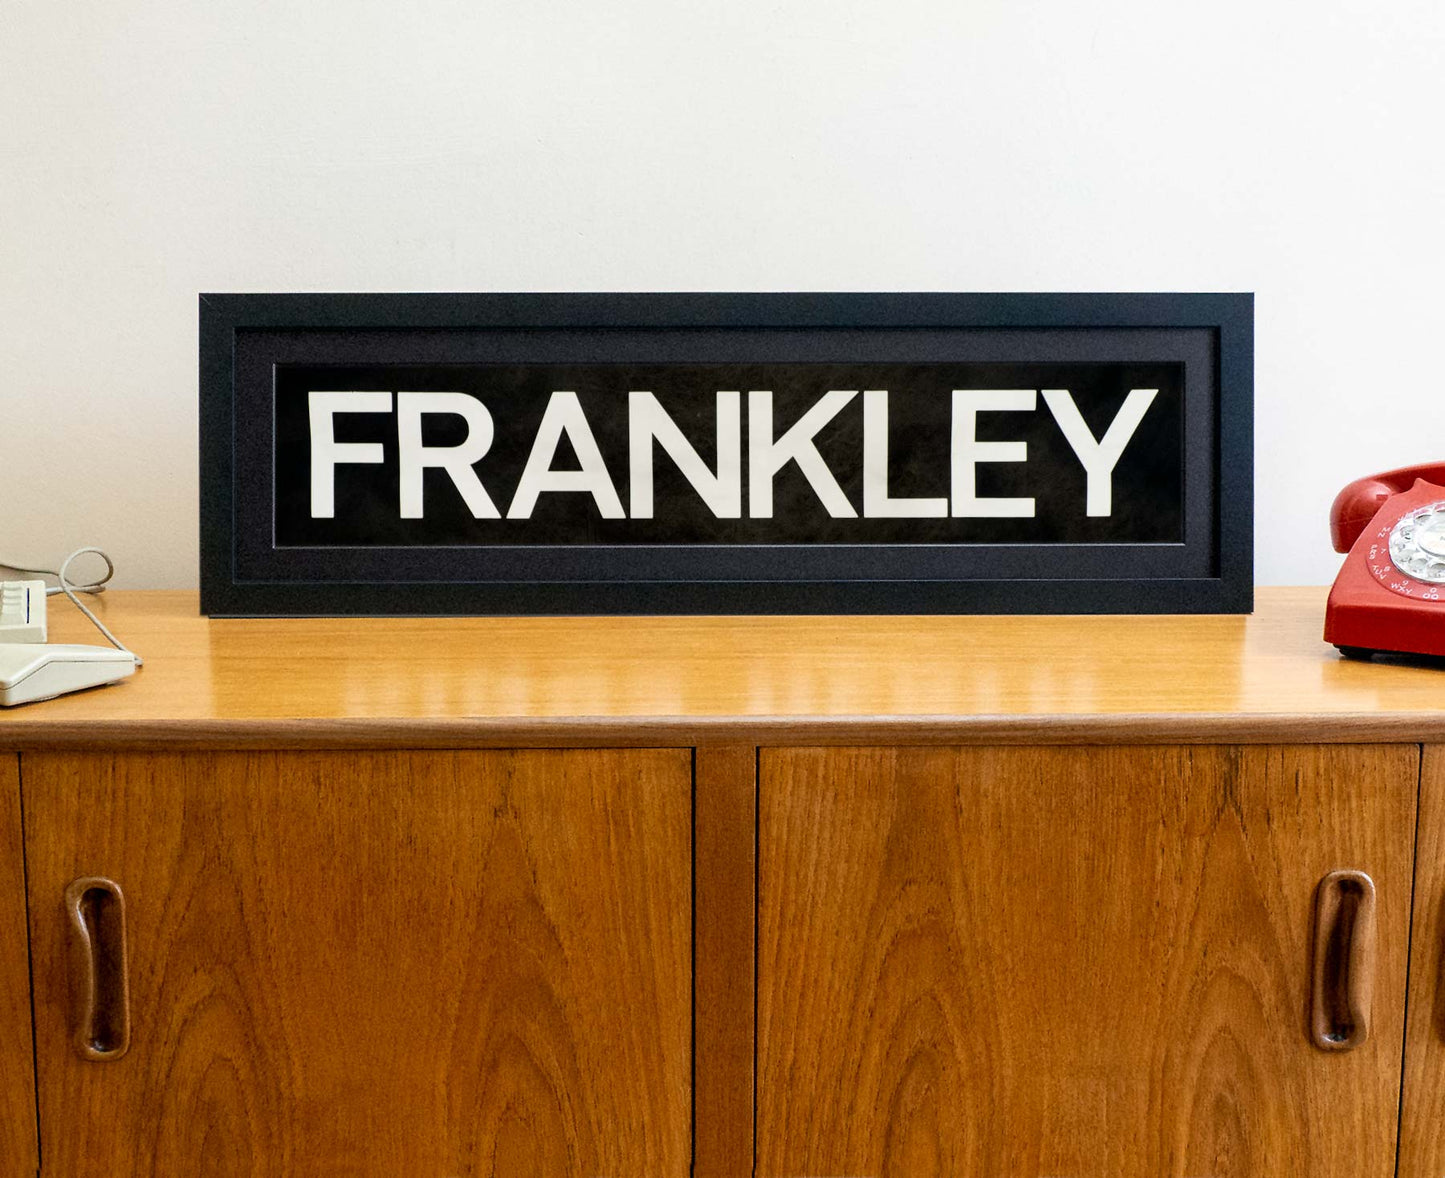 Frankley 1990s framed original bus blind